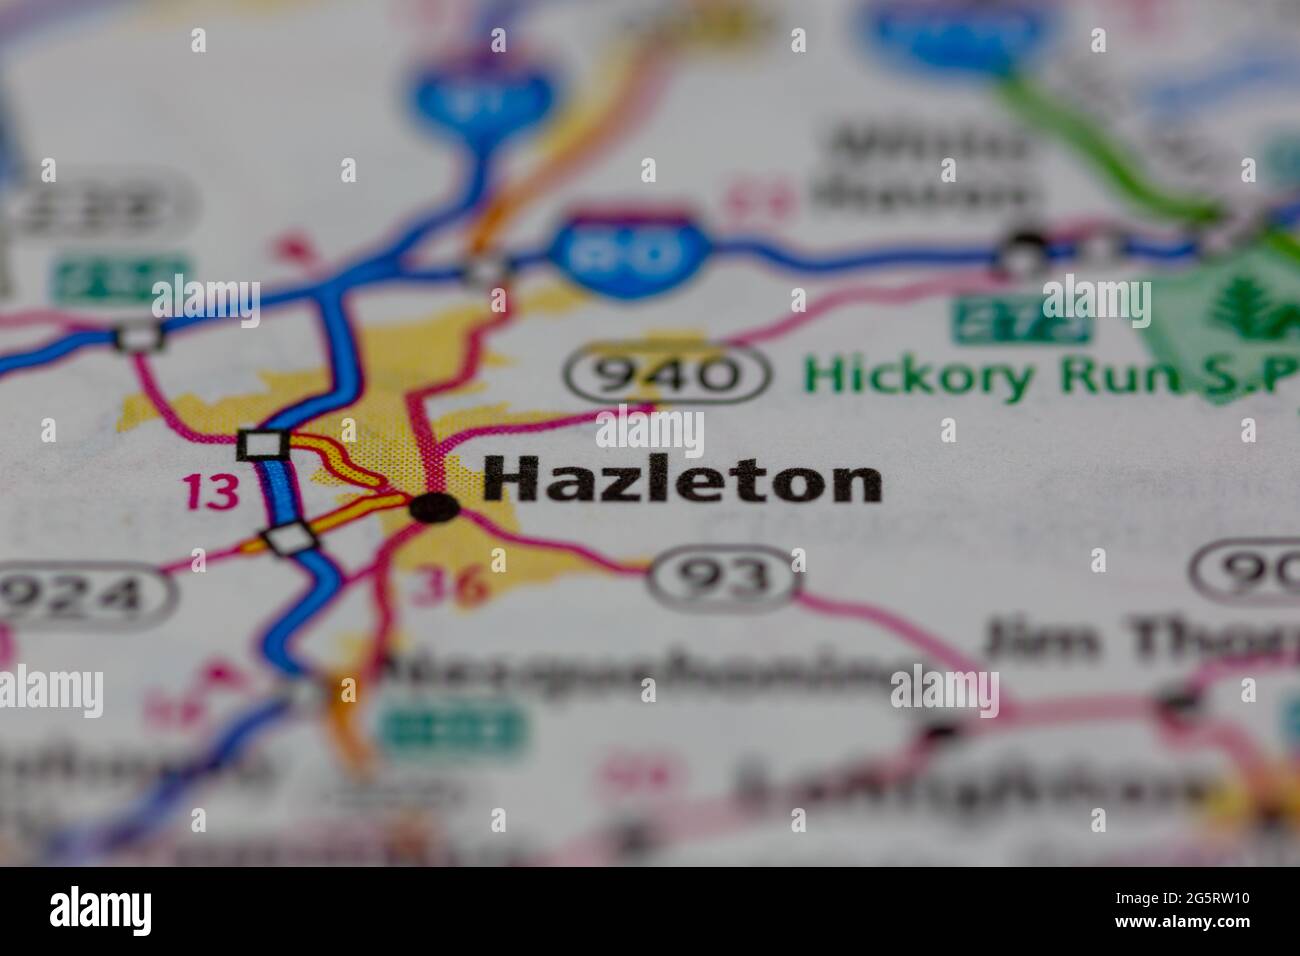 Hazleton Pennsylvania USA montré sur une carte de géographie ou une carte routière Banque D'Images